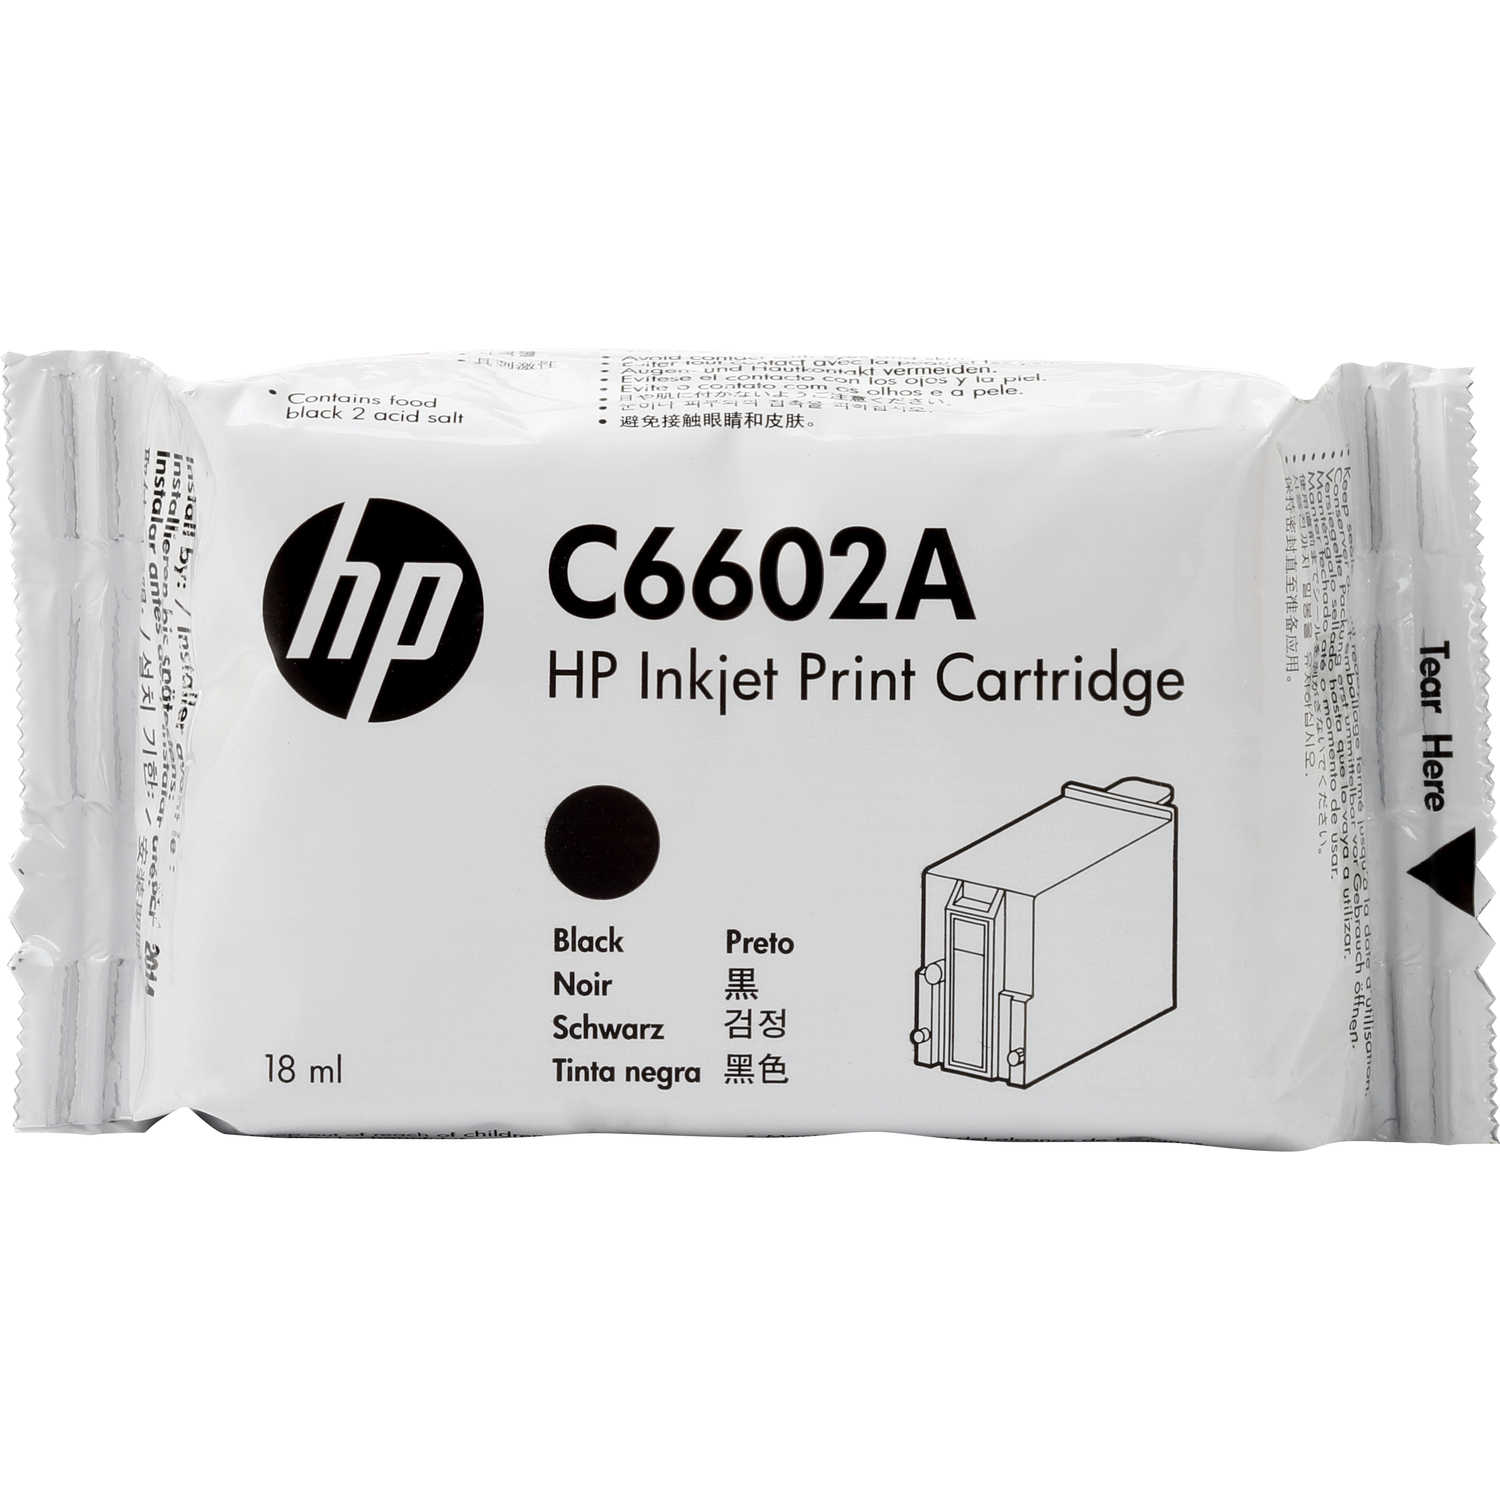 Картридж HP Inc. C6602A